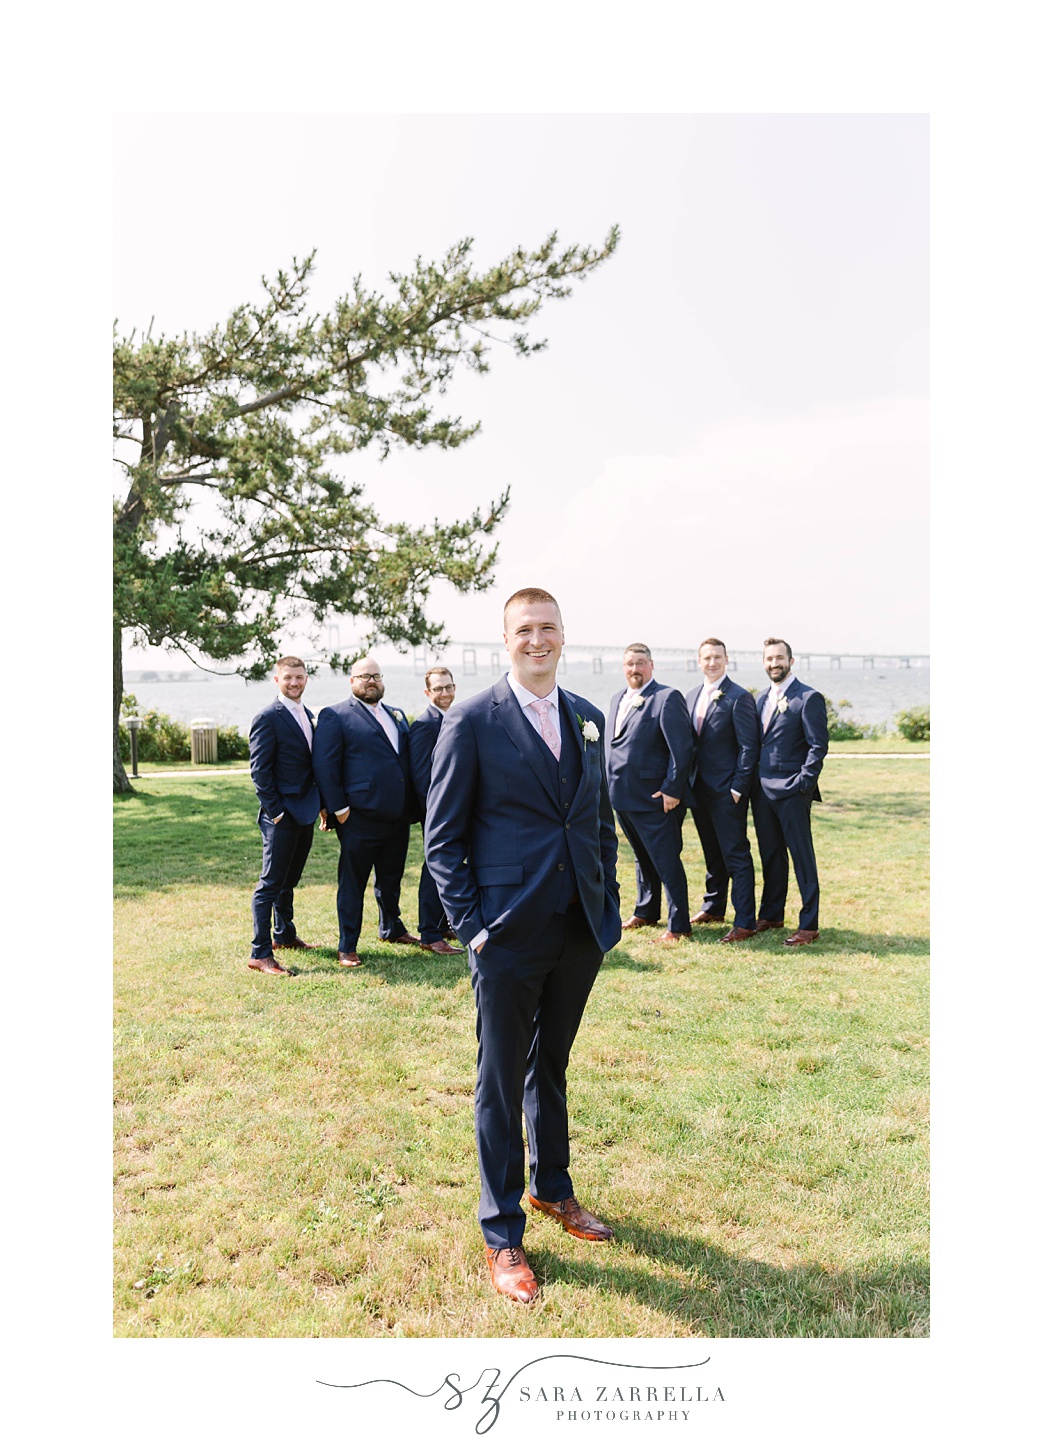 groom poses in navy suit with groomsmen on Gurney’s Newport Resort wedding day